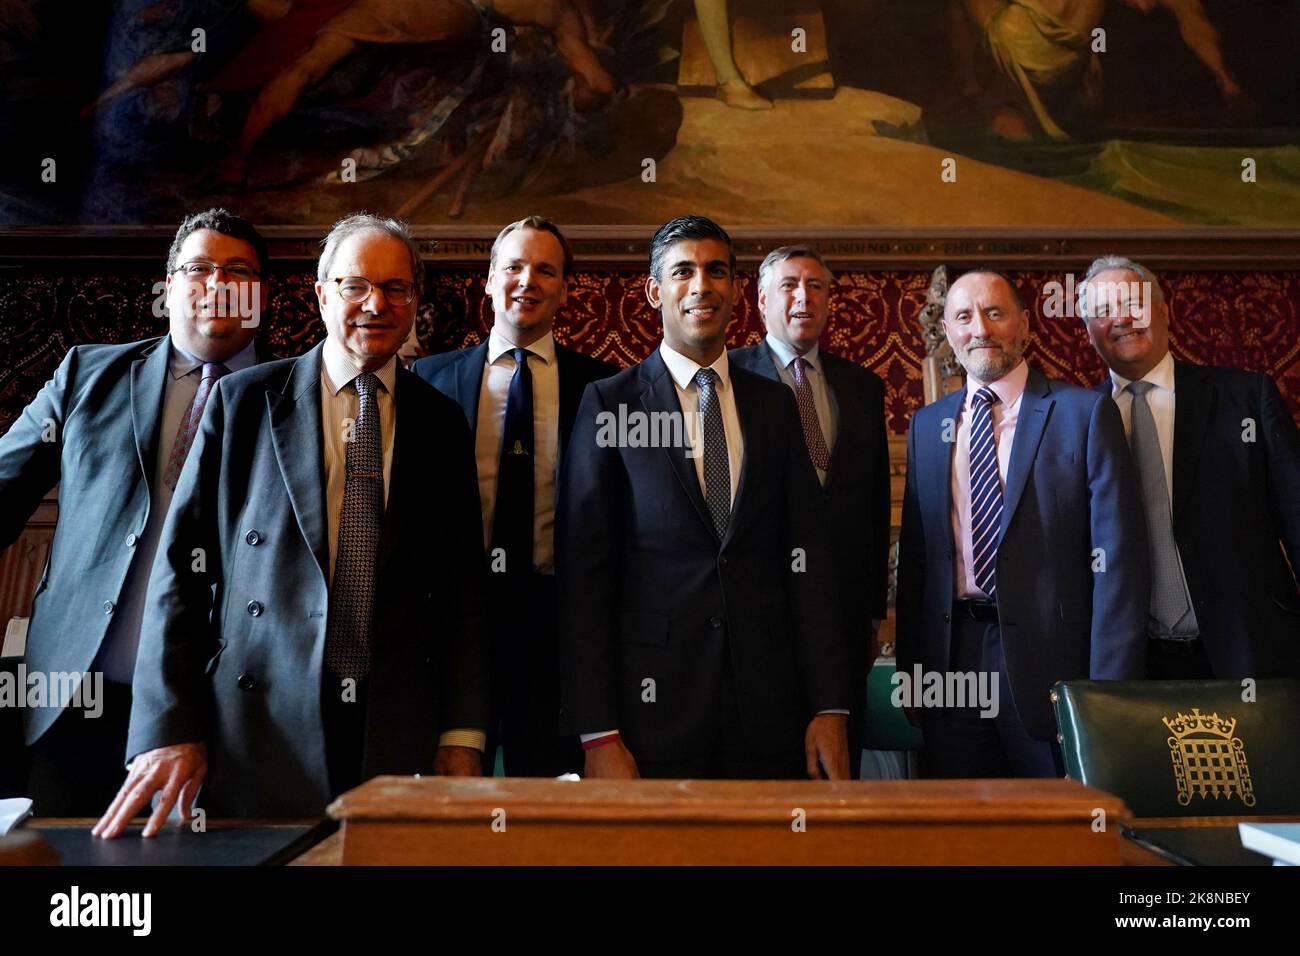 Rishi Sunak (Mitte) trifft sich mit Mitgliedern des Ausschusses 1922 im Londoner Parlamentsgebäude, nachdem angekündigt wurde, dass er der neue Vorsitzende der konservativen Partei werden wird, nachdem der Rivale Penny Mordaunt aus dem Parlament ausgetreten ist. Bilddatum: Montag, 24. Oktober 2022. Stockfoto